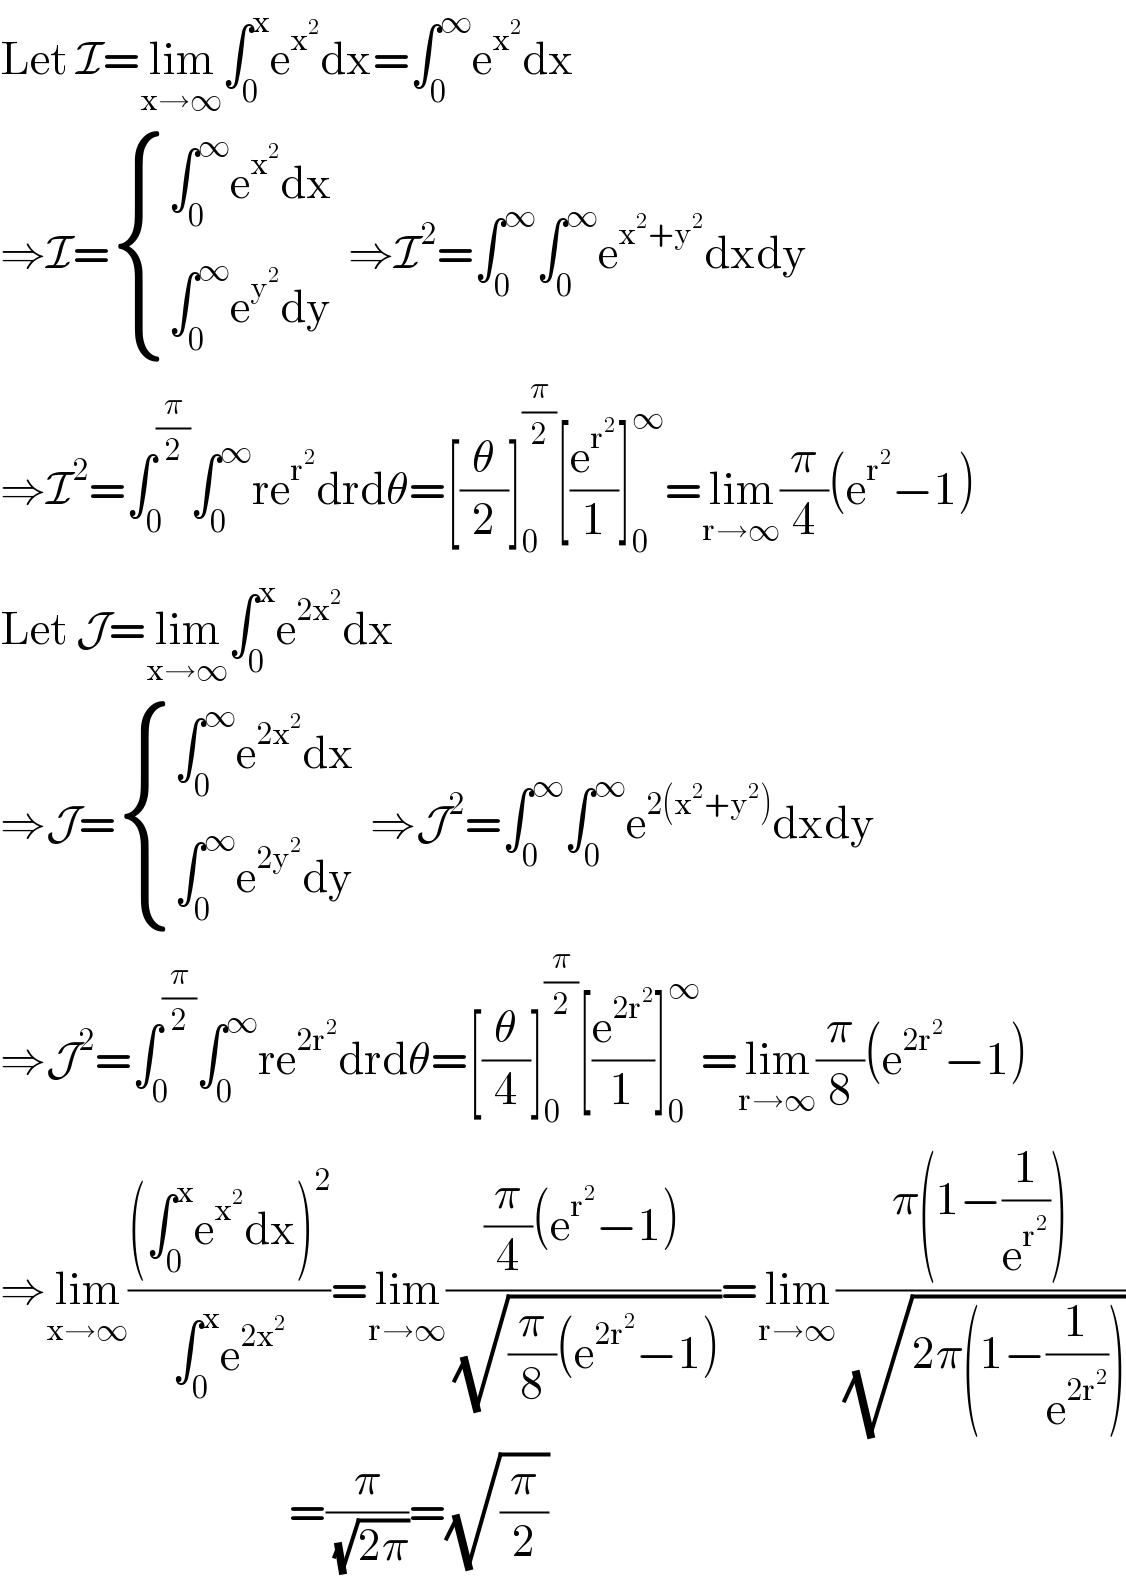 Let I=lim_(x→∞) ∫_0 ^x e^x^2  dx=∫_0 ^∞ e^x^2  dx  ⇒I= { ((∫_0 ^∞ e^x^2  dx)),((∫_0 ^∞ e^y^2  dy)) :}  ⇒I^2 =∫_0 ^∞ ∫_0 ^∞ e^(x^2 +y^2 ) dxdy  ⇒I^2 =∫_0 ^(π/2) ∫_0 ^∞ re^r^2  drdθ=[(θ/2)]_0 ^(π/2) [(e^r^2  /1)]_0 ^∞ =lim_(r→∞) (π/4)(e^r^2  −1)  Let J=lim_(x→∞) ∫_0 ^x e^(2x^2 ) dx  ⇒J= { ((∫_0 ^∞ e^(2x^2 ) dx)),((∫_0 ^∞ e^(2y^2 ) dy)) :}  ⇒J^2 =∫_0 ^∞ ∫_0 ^∞ e^(2(x^2 +y^2 )) dxdy  ⇒J^2 =∫_0 ^(π/2) ∫_0 ^∞ re^(2r^2 ) drdθ=[(θ/4)]_0 ^(π/2) [(e^(2r^2 ) /1)]_0 ^∞ =lim_(r→∞) (π/8)(e^(2r^2 ) −1)  ⇒lim_(x→∞) (((∫_0 ^x e^x^2  dx)^2 )/(∫_0 ^x e^(2x^2 ) ))=lim_(r→∞) (((π/4)(e^r^2  −1))/(√((π/8)(e^(2r^2 ) −1))))=lim_(r→∞) ((π(1−(1/e^r^2  )))/(√(2π(1−(1/e^(2r^2 ) )))))                                      =(π/(√(2π)))=(√(π/2))  